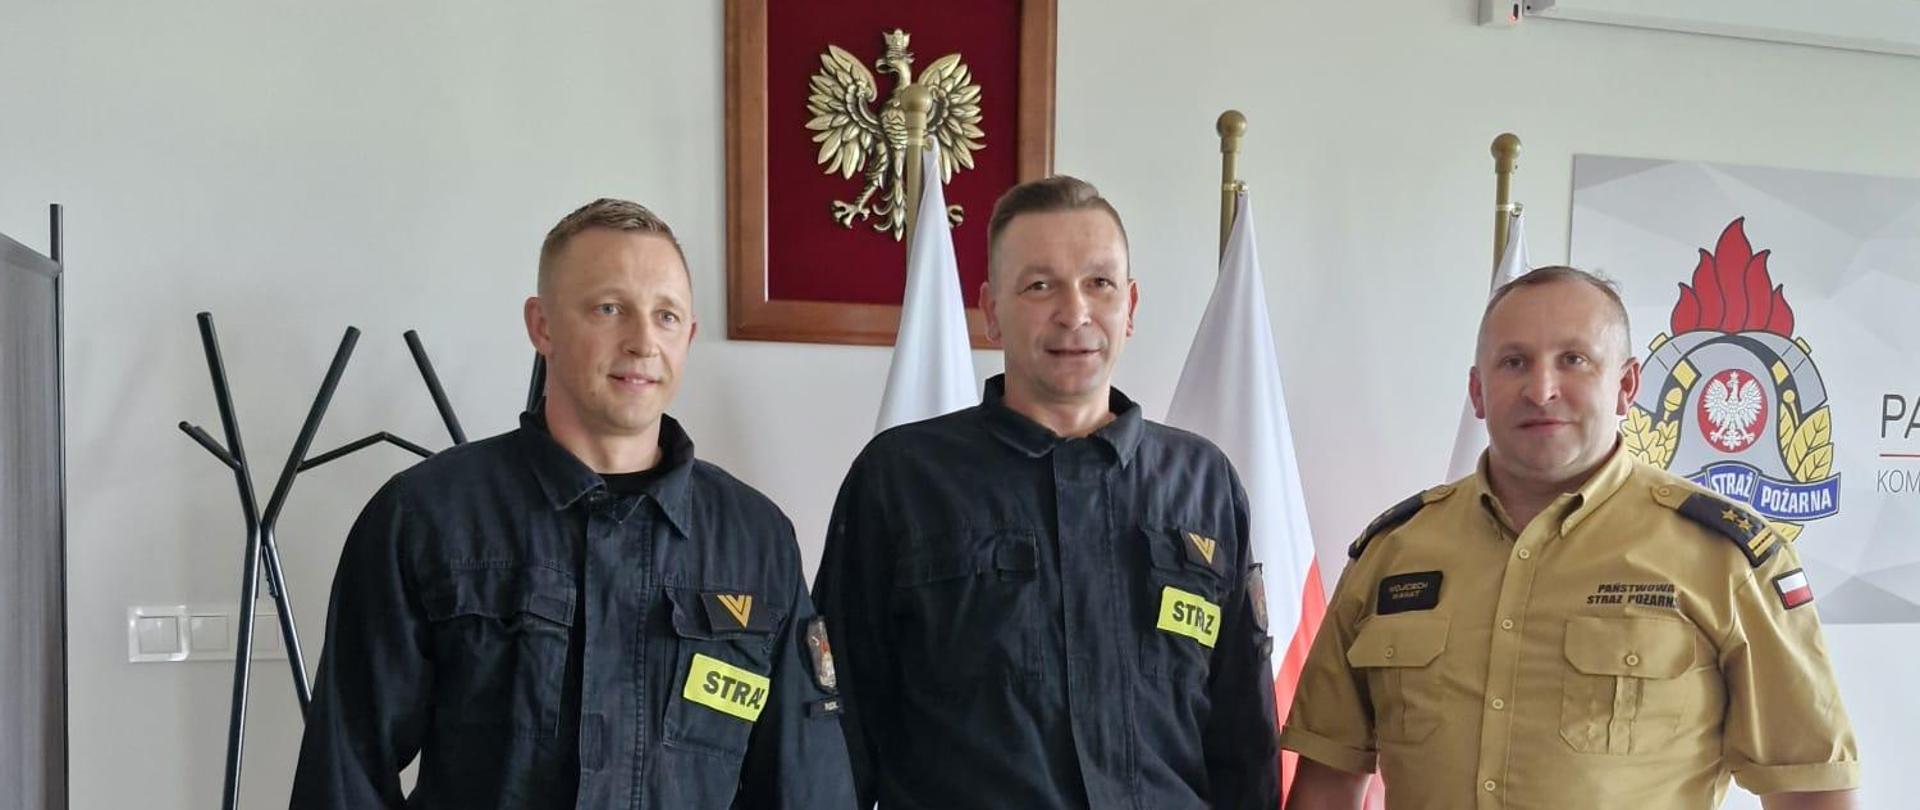 Nagrodzeni Funkcjonariusze (od lewej) st. ogn. Mirosław Rost oraz st.ogn. Krzysztof Żaczek oraz Komendant Powiatowy PSP w Pucku uśmiechają się do autora zdjęcia. Funkcjonariusze trzymają w rękach nagrody jubileuszowe wręczone przez Komendanta.